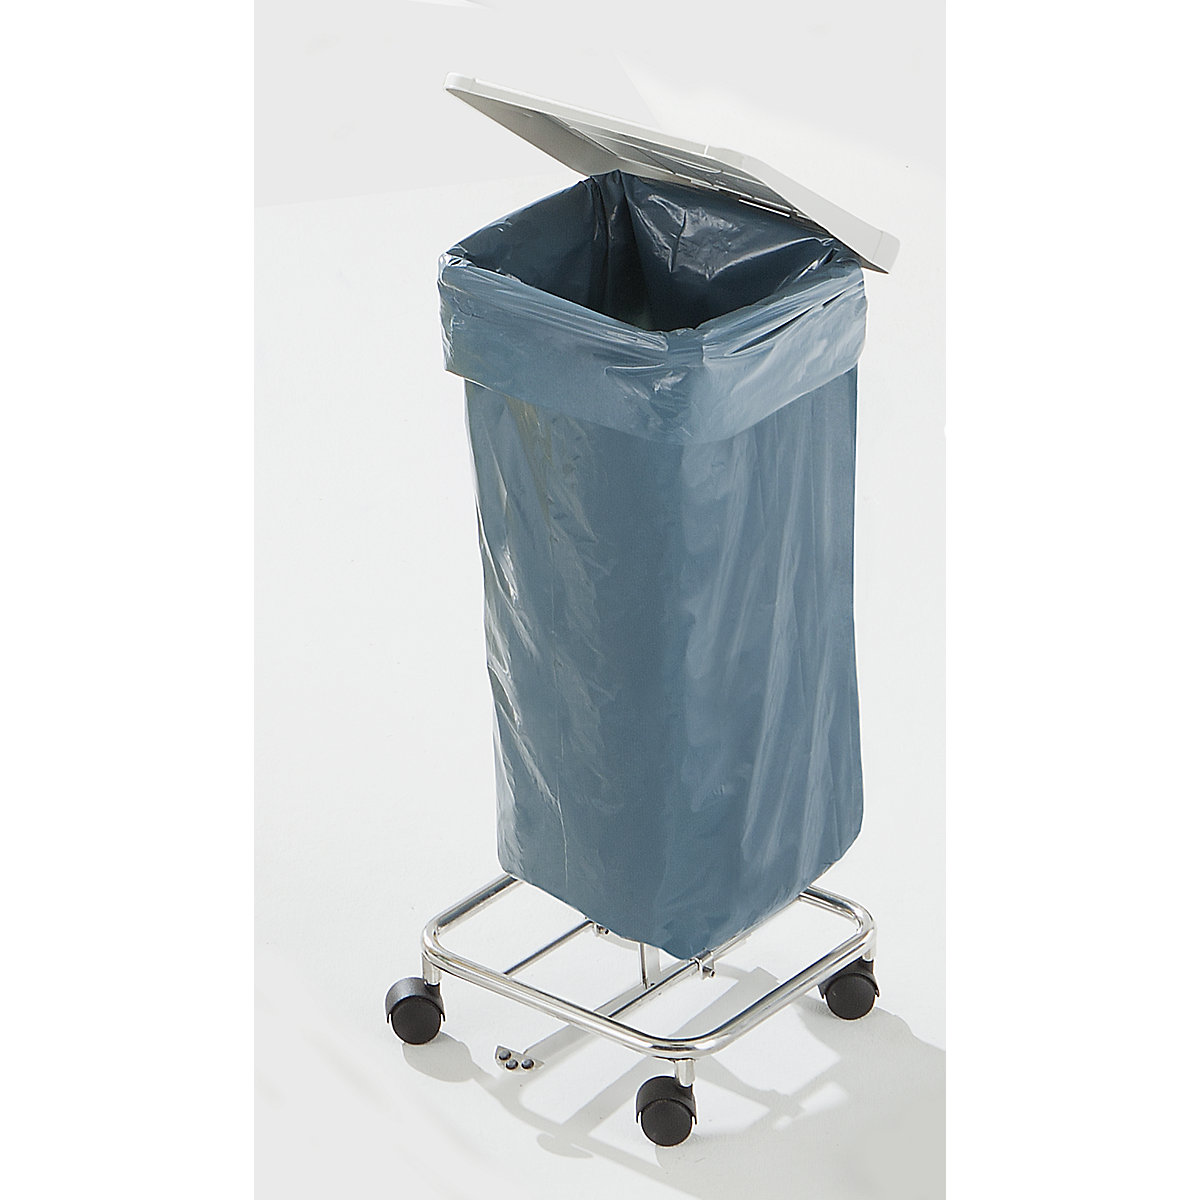 Support sacs-poubelle de tri, sans couvercle: pour capacité 2 x 70 l,  châssis roulant